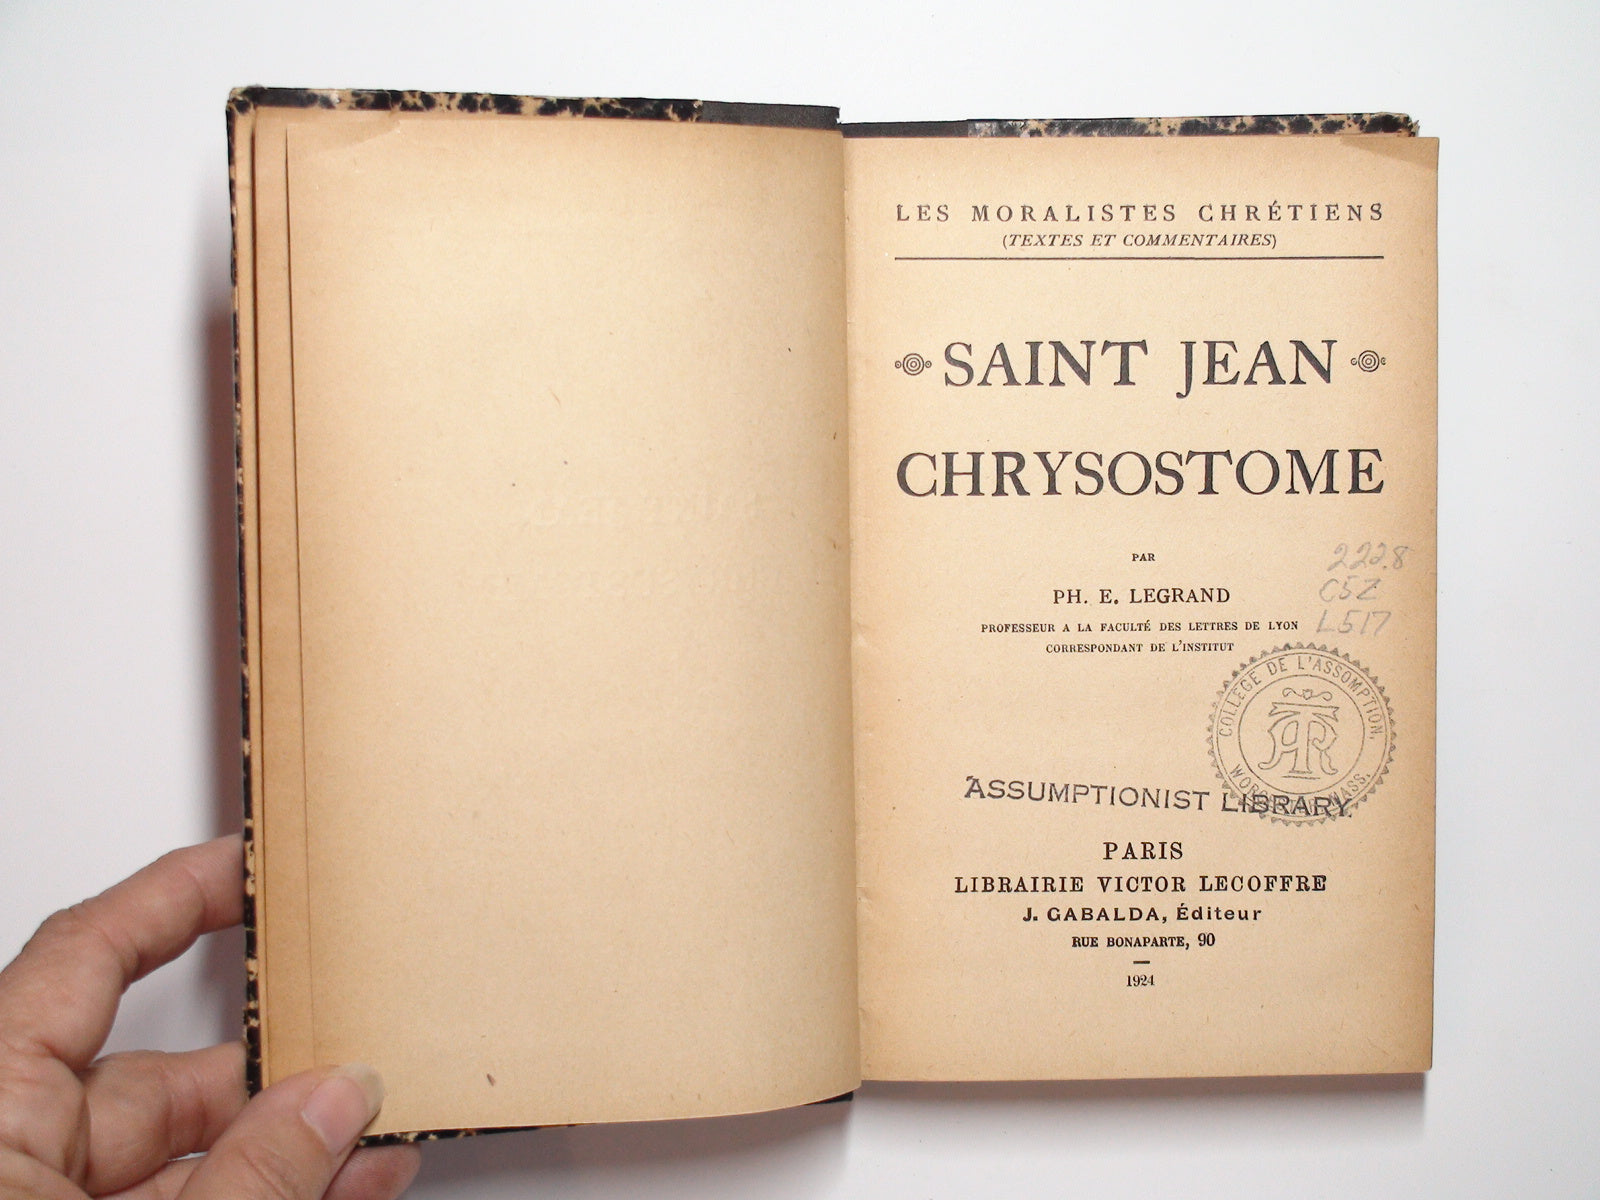 Les Moralistes Chrétiens, Saint Jean Chrysostome, E. Legrand, French Language, 1924